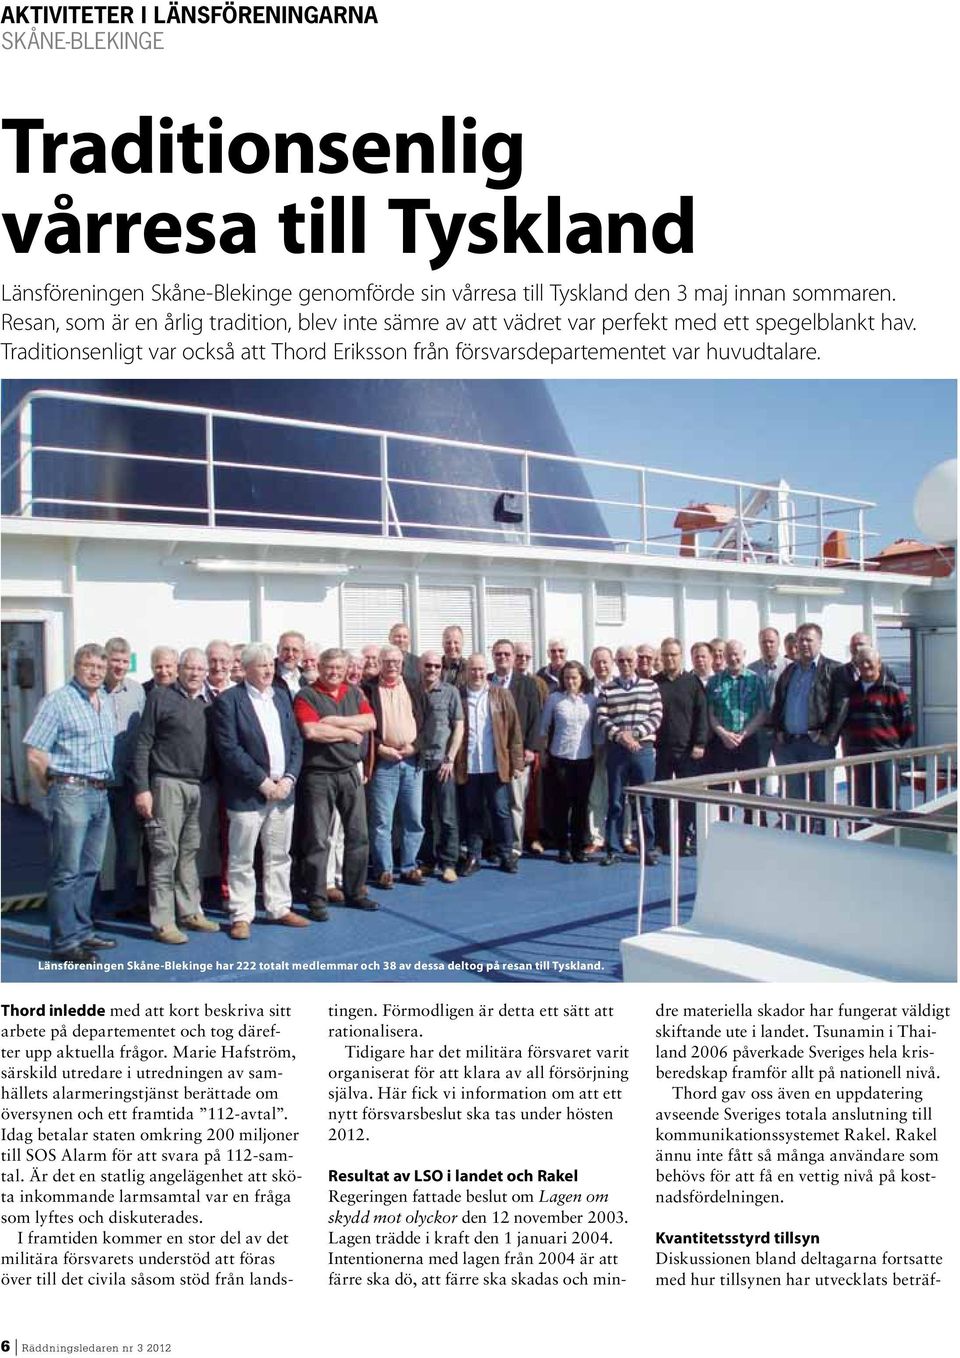 Länsföreningen Skåne-Blekinge har 222 totalt medlemmar och 38 av dessa deltog på resan till Tyskland.